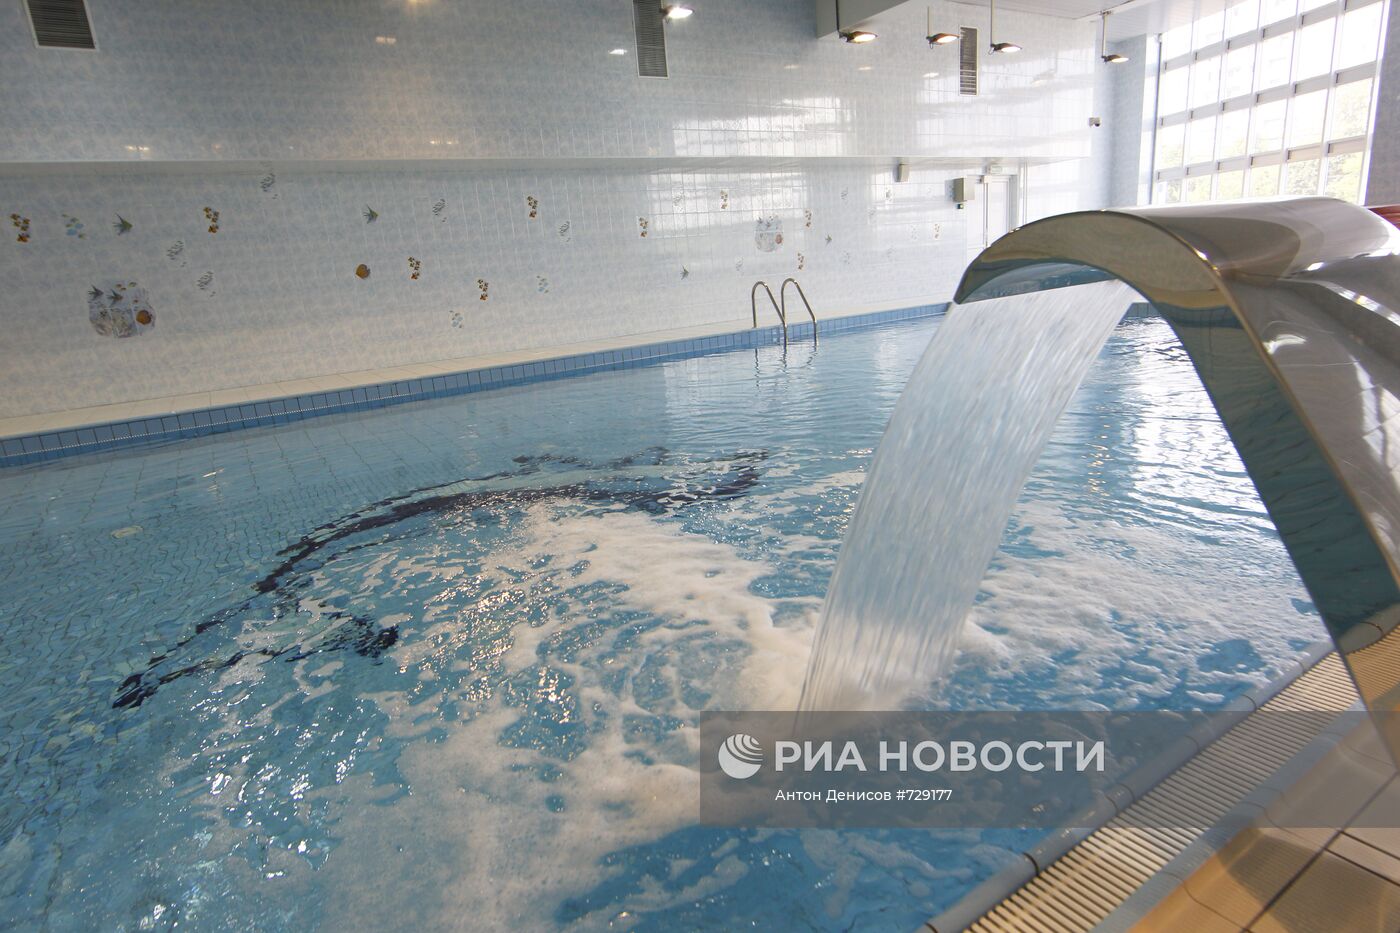 Подготовка к открытию спортивного комплекса "Янтарь" в Строгино